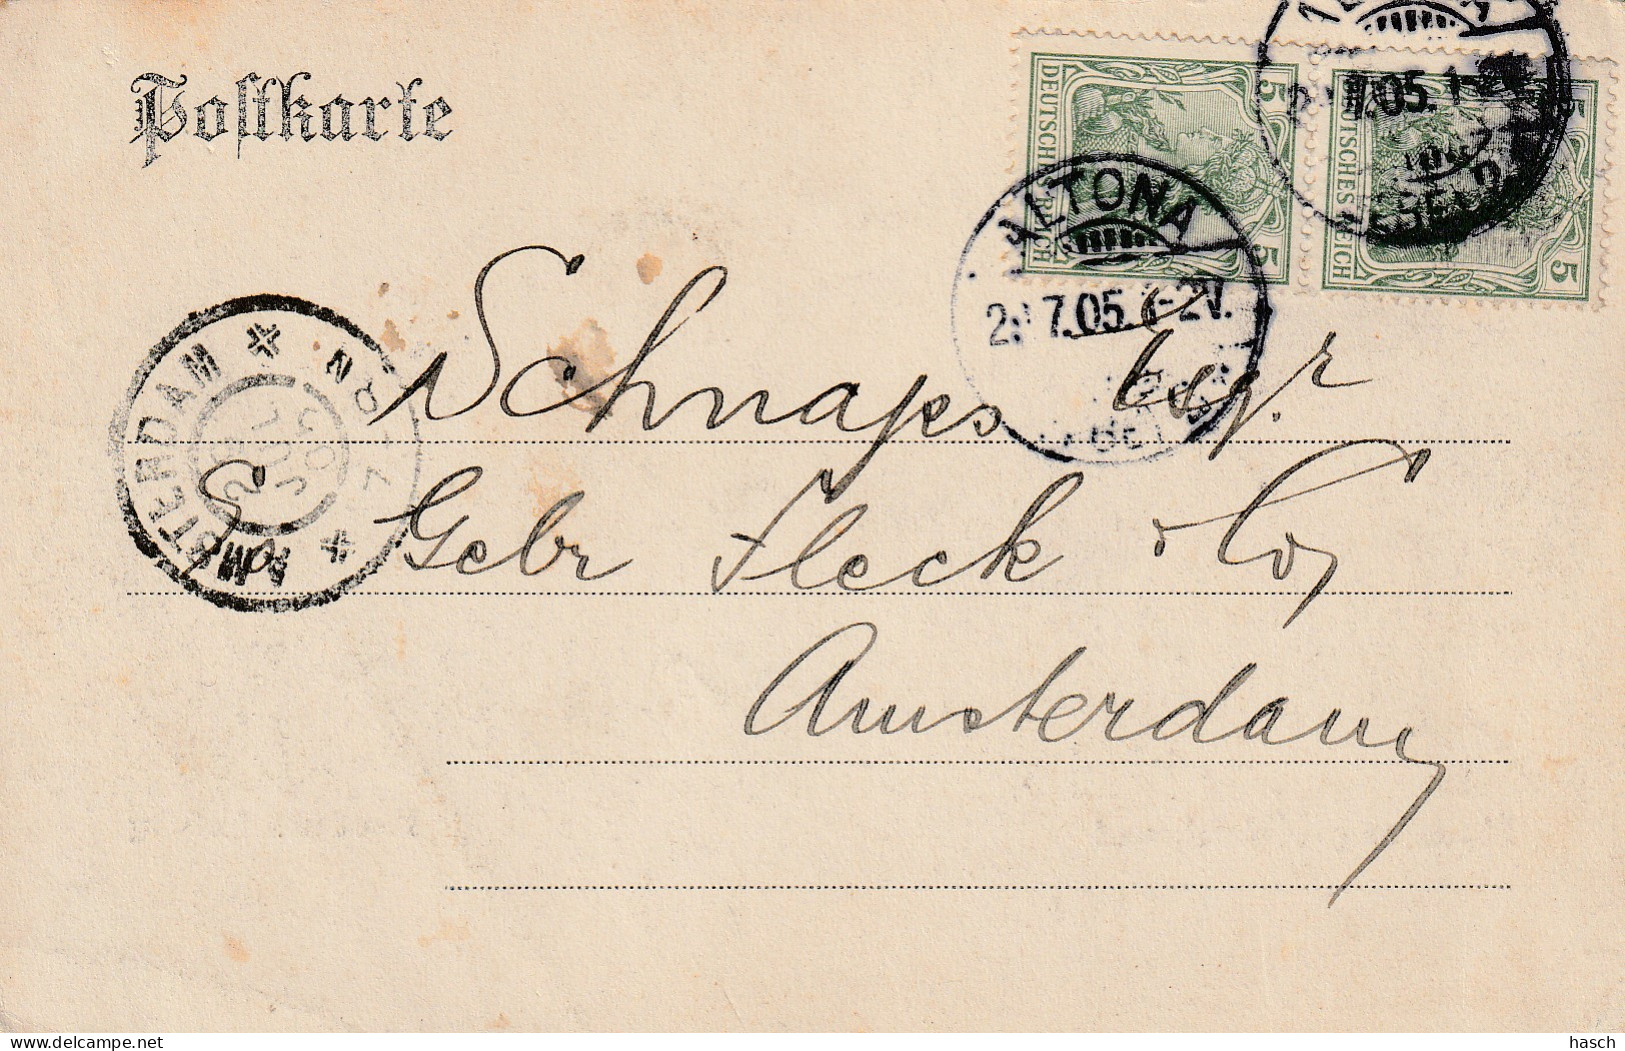 4920 197 Hamburg Uhlenhorst, Kanal Am Hofweg. 1905.  - Nord